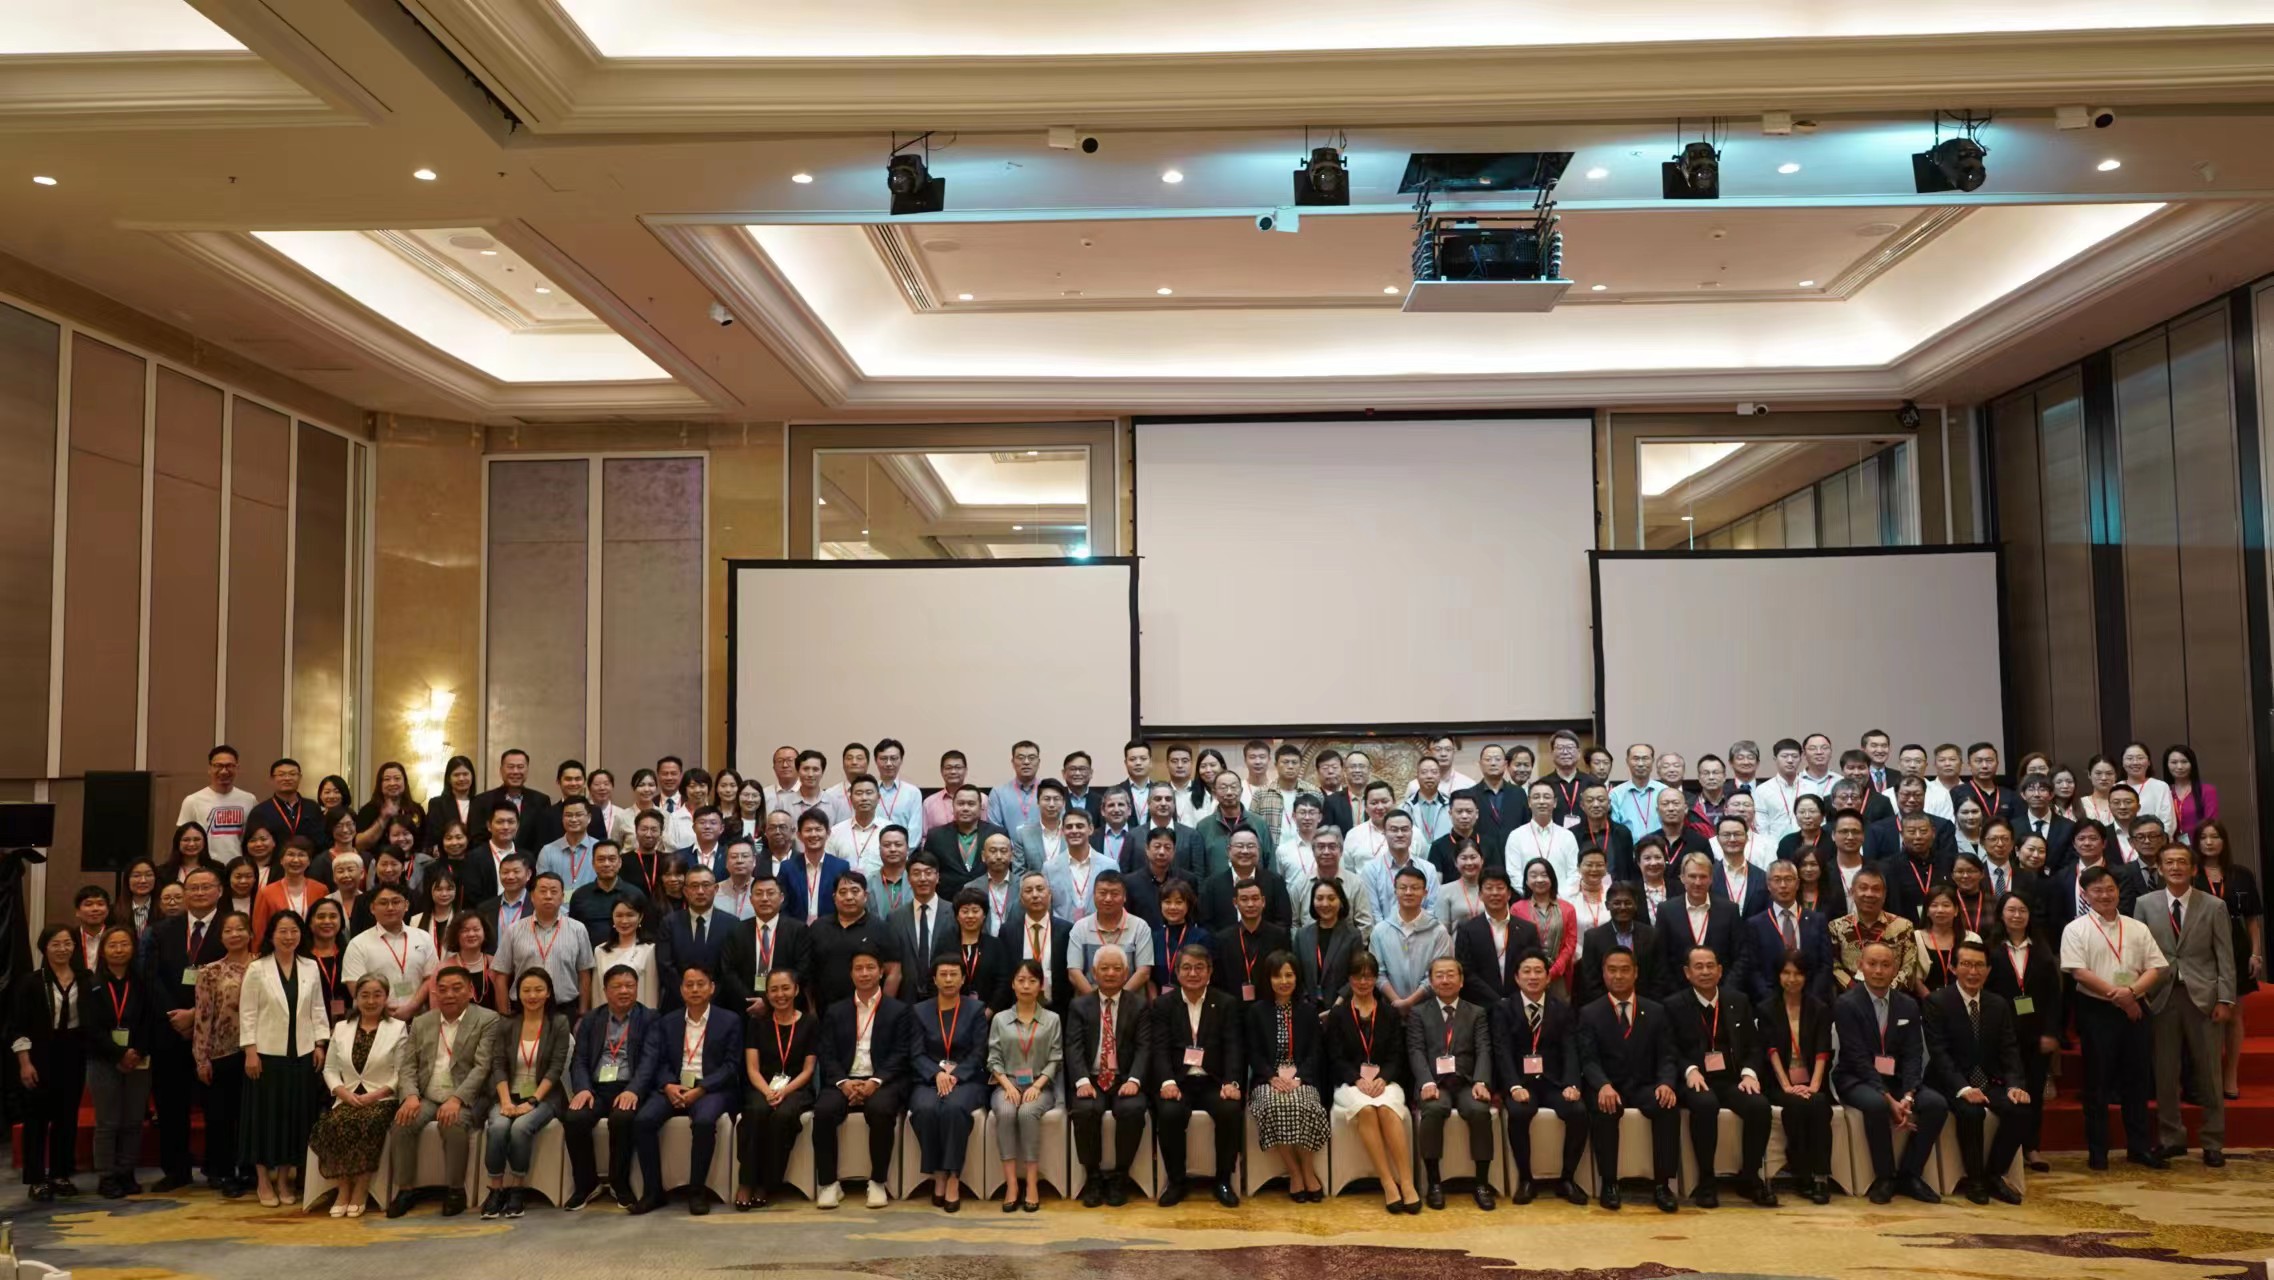 中国造纸院主办的第七届卫生用品行业发展大会在马来西亚成功举办